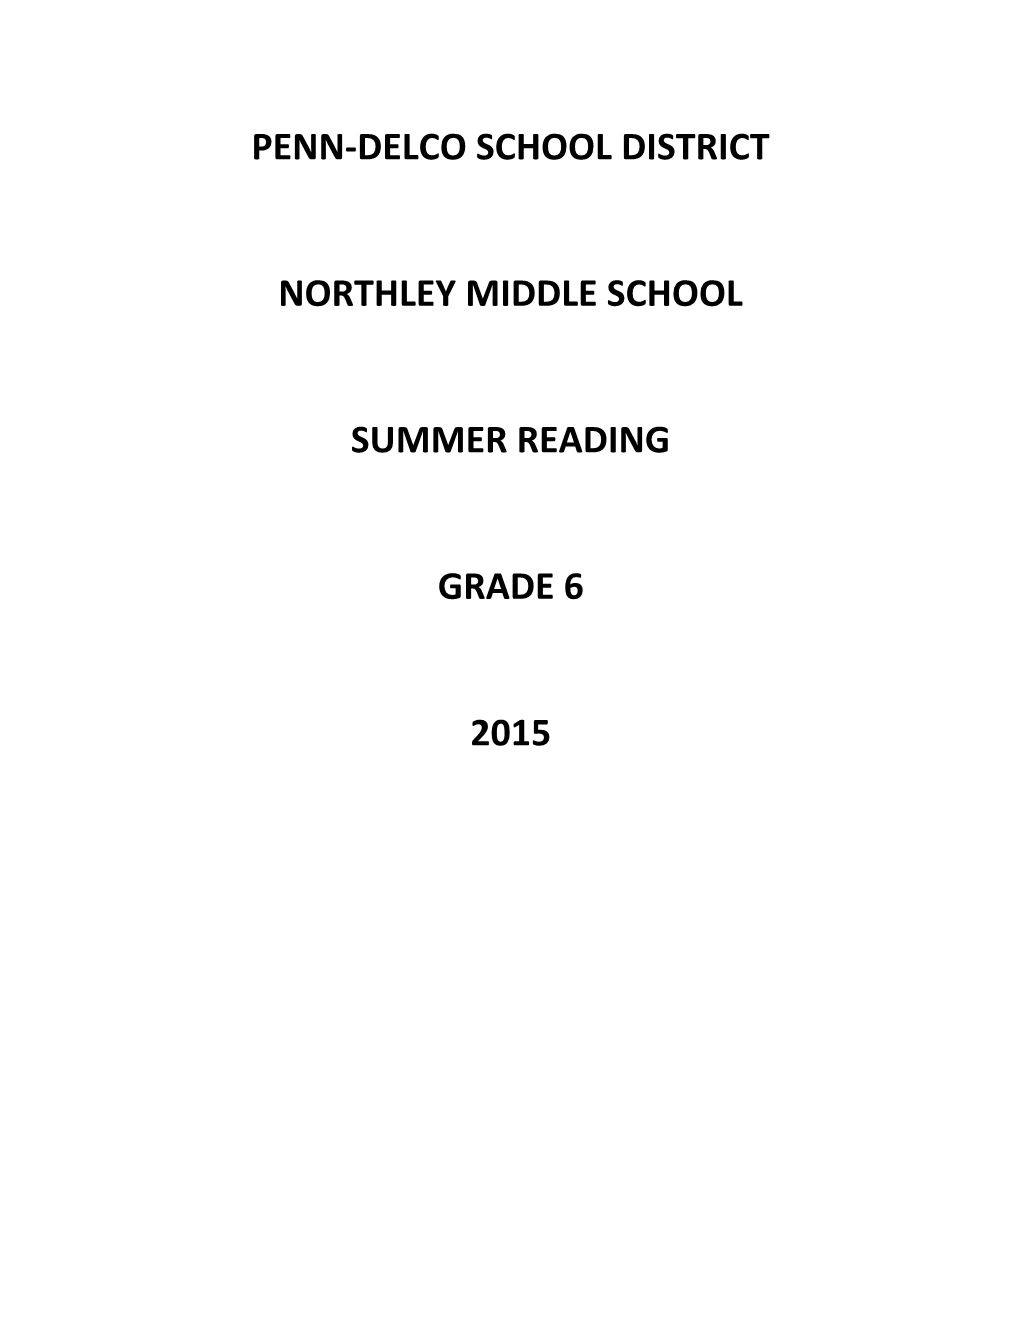 Summer Reading List Entering 6Th Grade